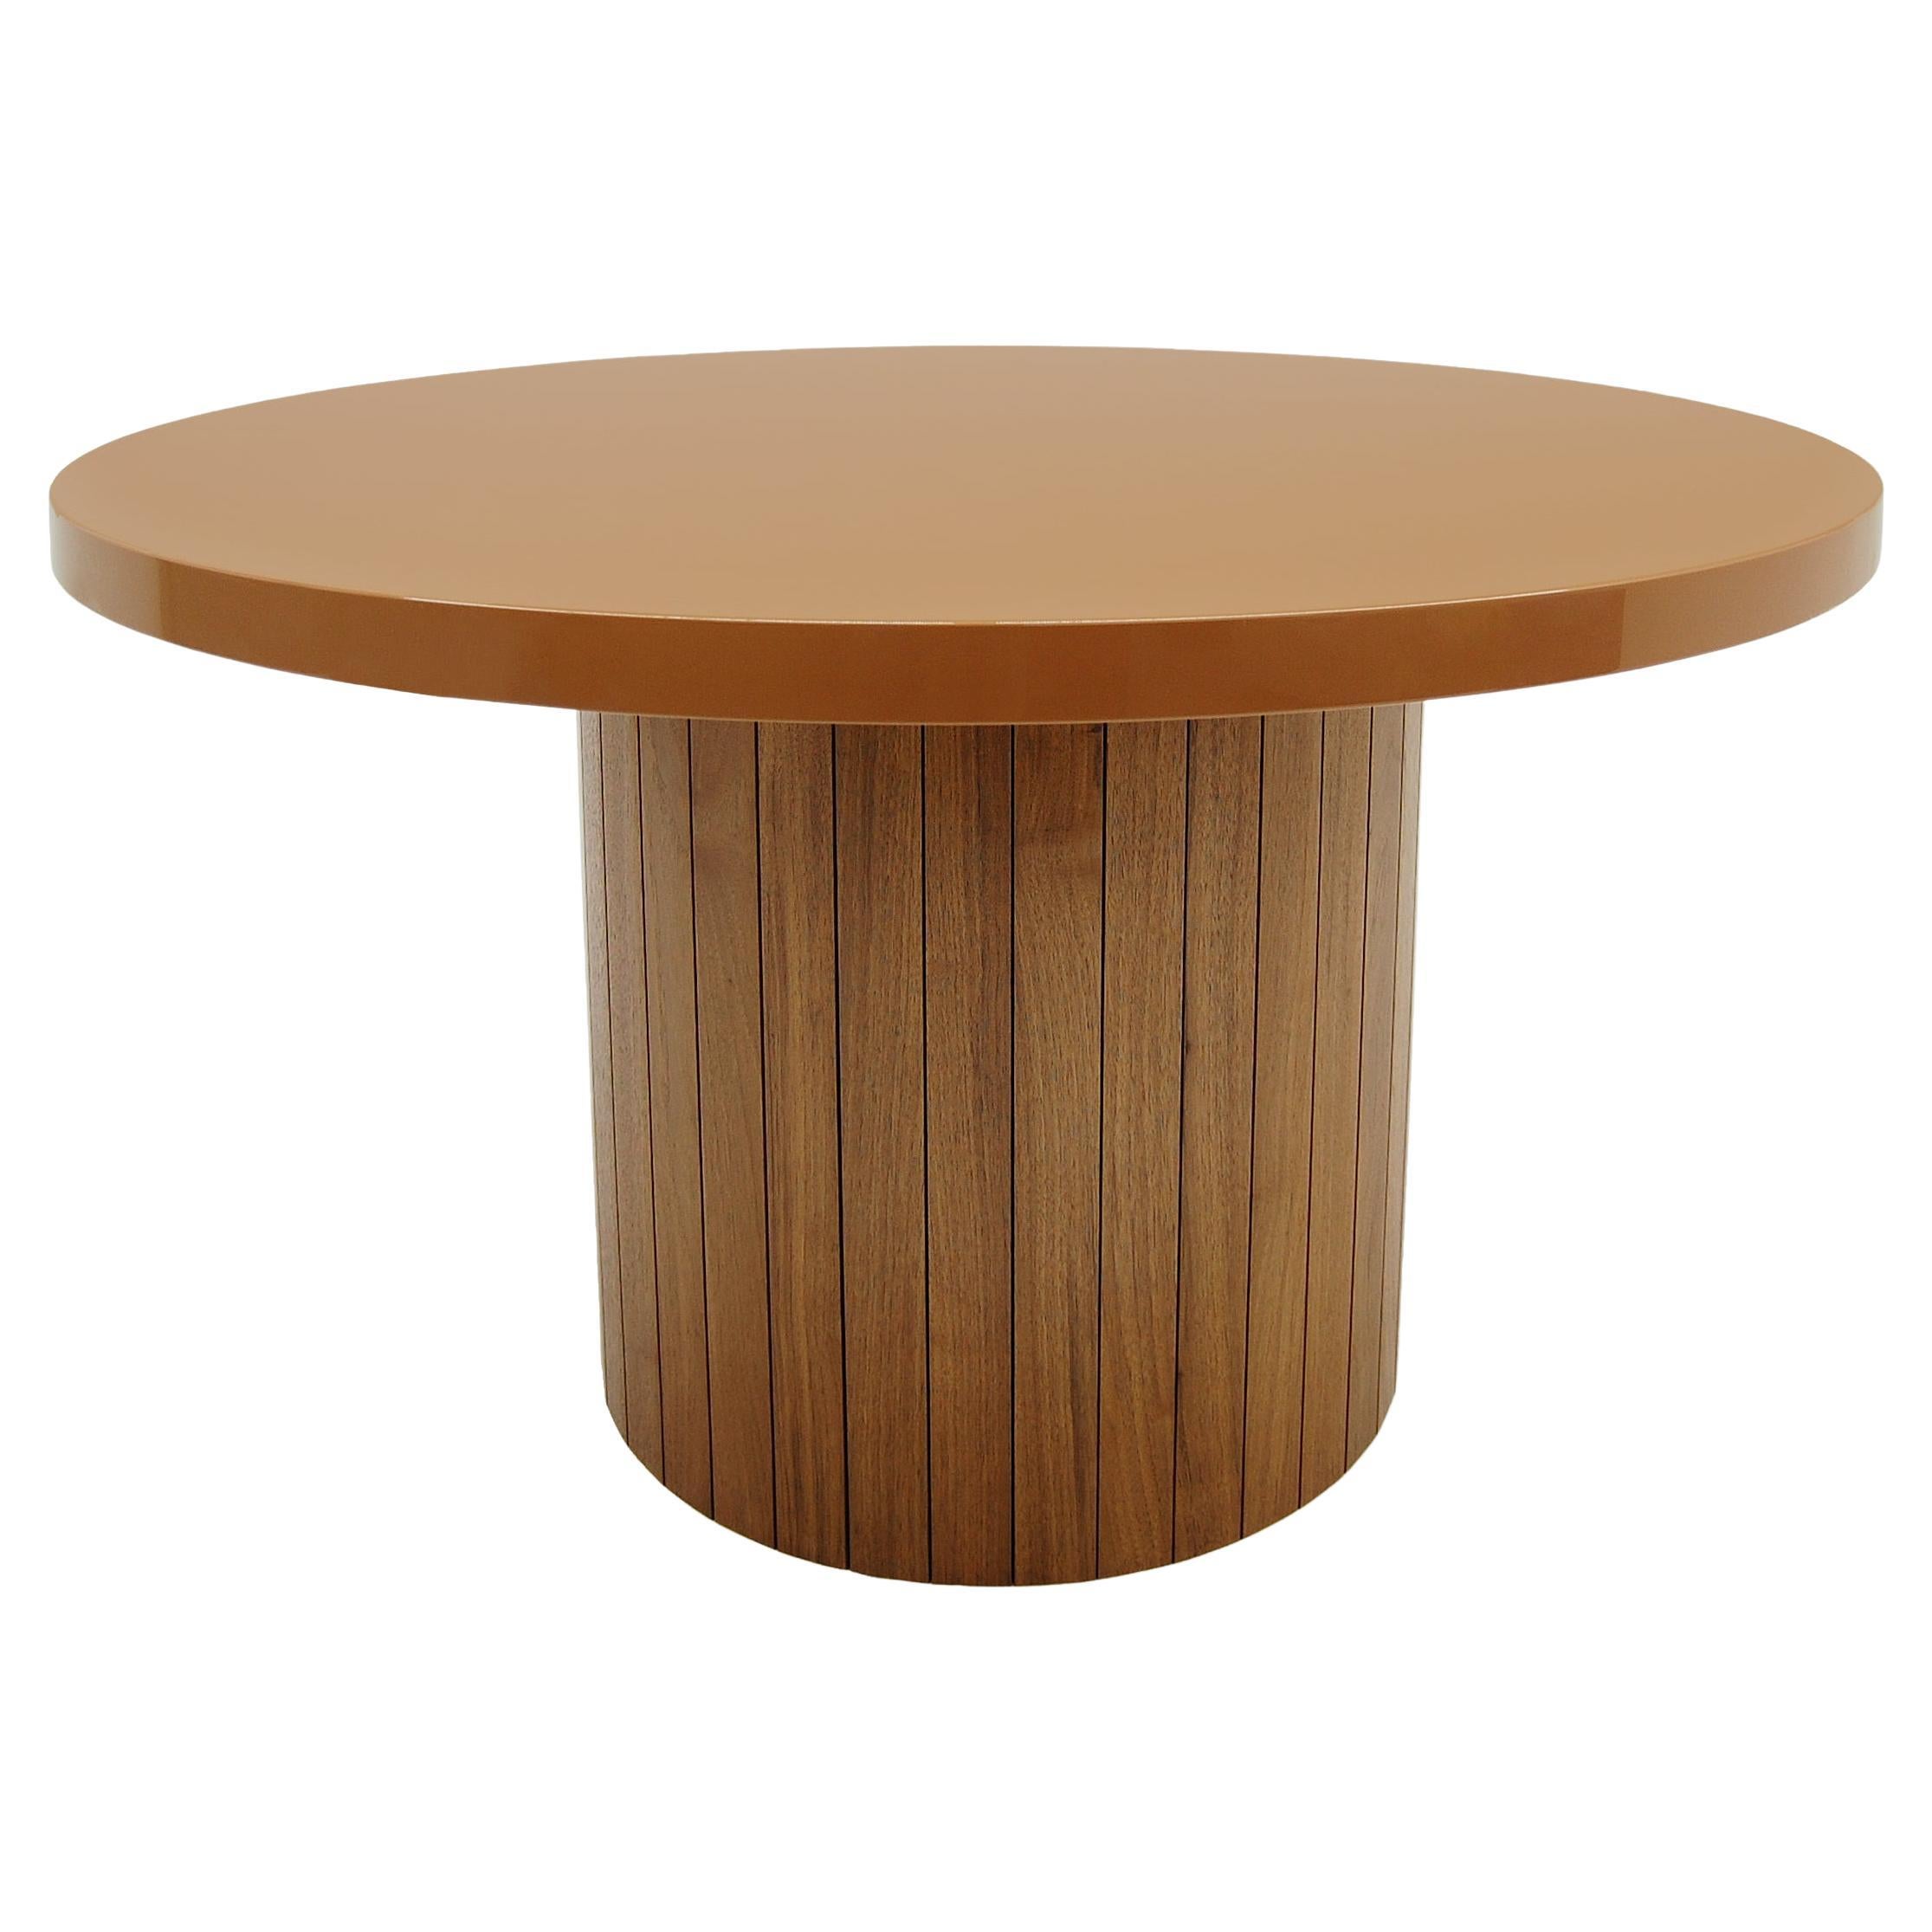 Table en planche ronde avec plateau en laque et base en bois, noyer, fabriquée sur commande 